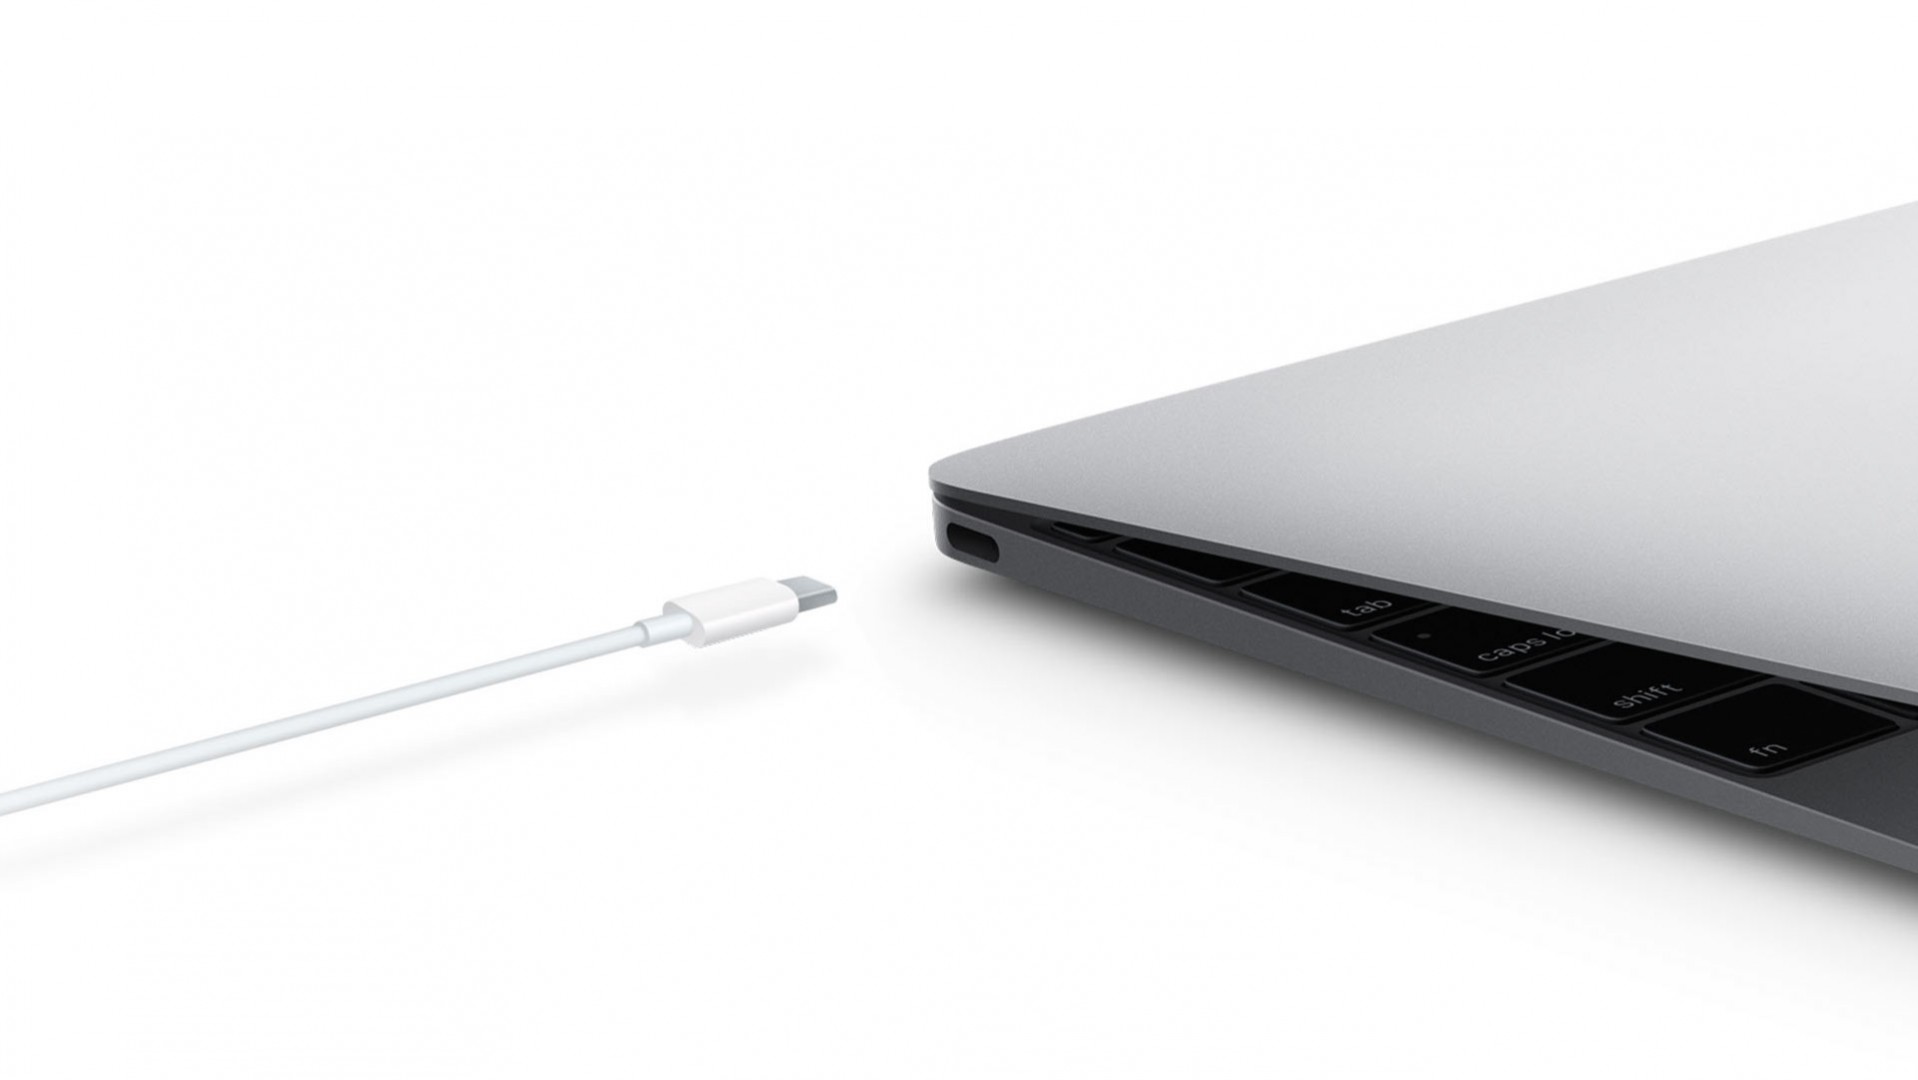 Apple เรียกเก็บสายชาร์จ USB-C ที่มาพร้อมกับเครื่อง Macbook เนื่องจากปัญหาทางด้านการออกแบบ